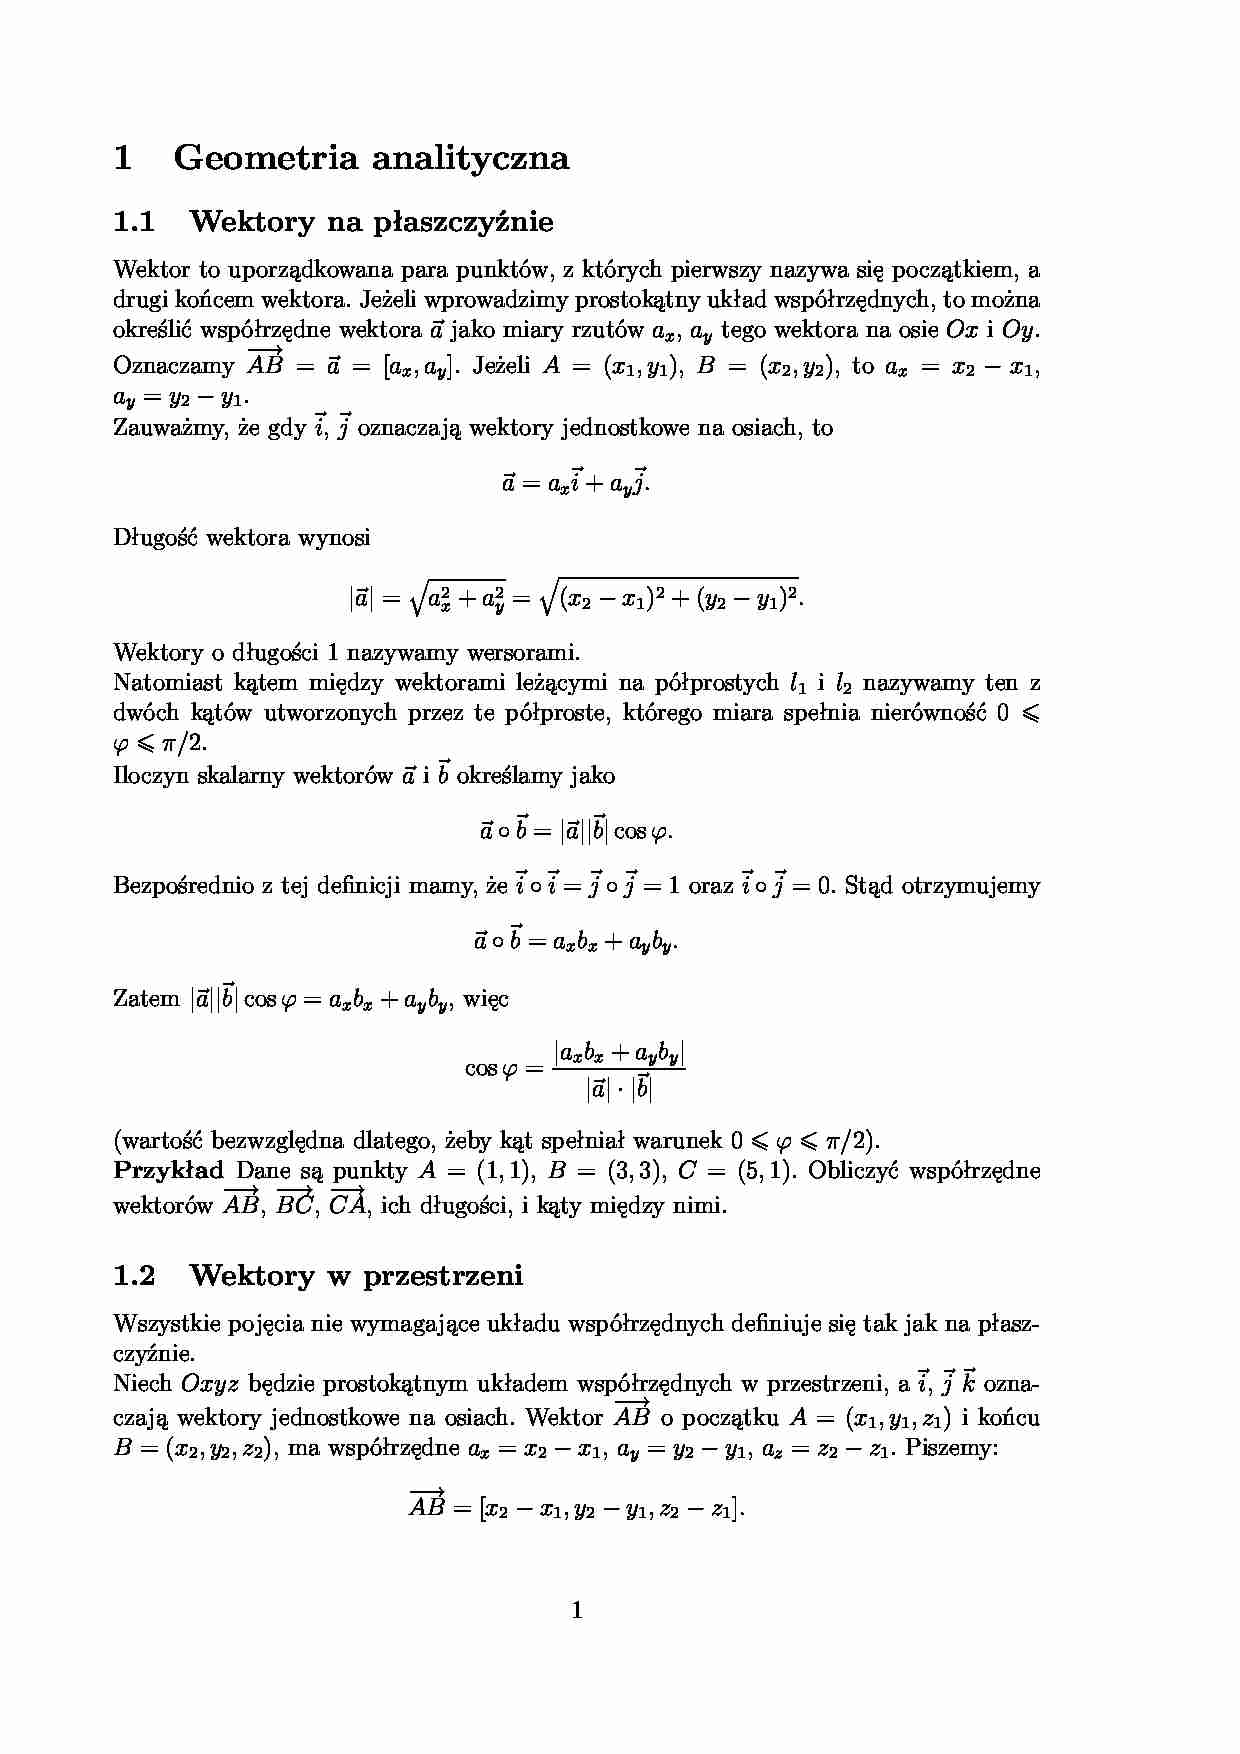 Geometria analityczna - wykład - strona 1